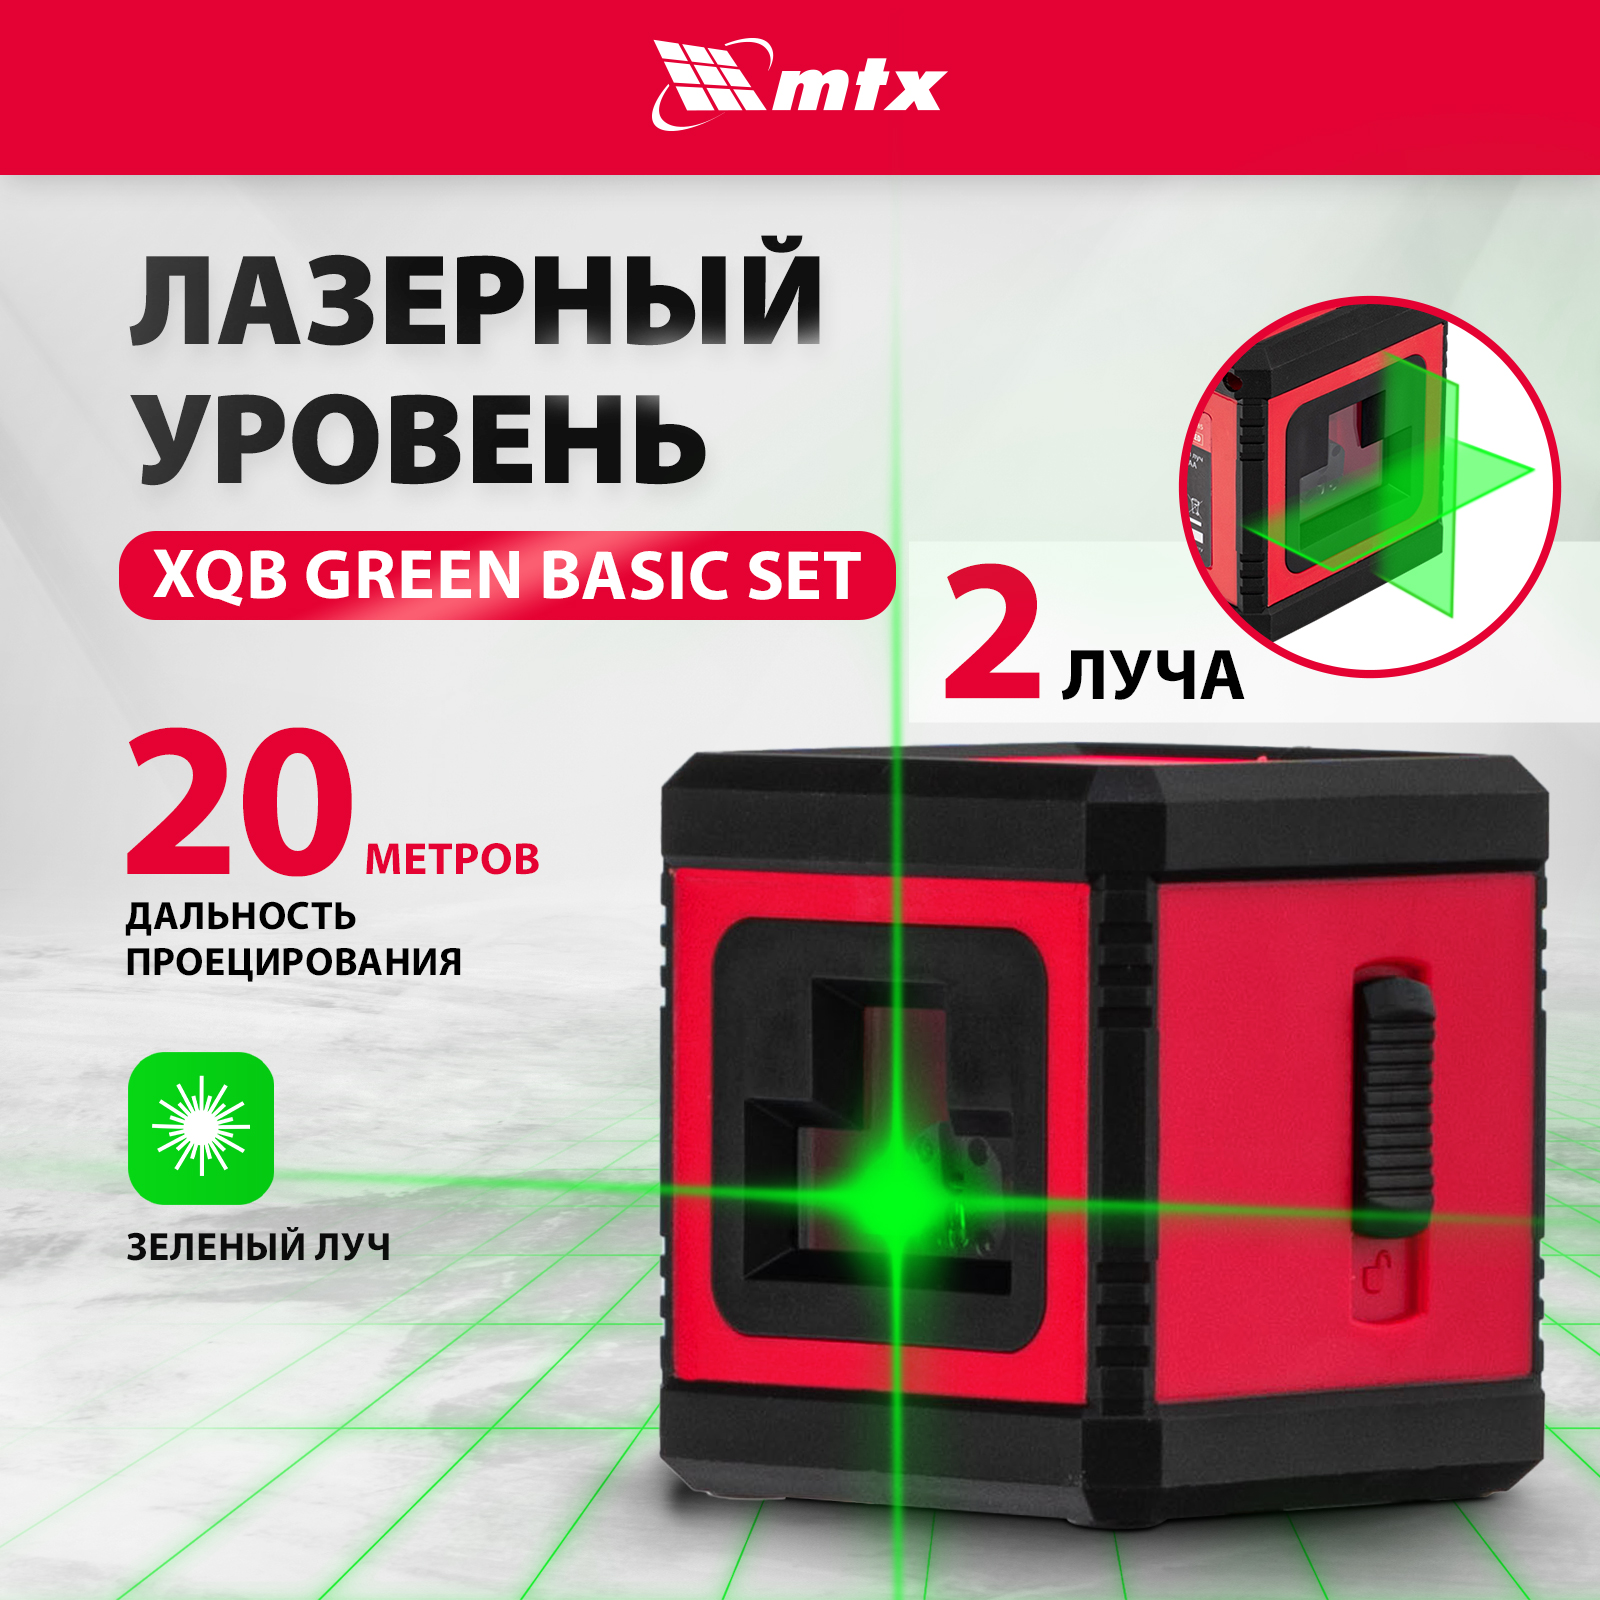 Лазерный уровень MTX XQB GREEN Basic SET, 20 м, зеленый луч, батарейки, резьба 1/4